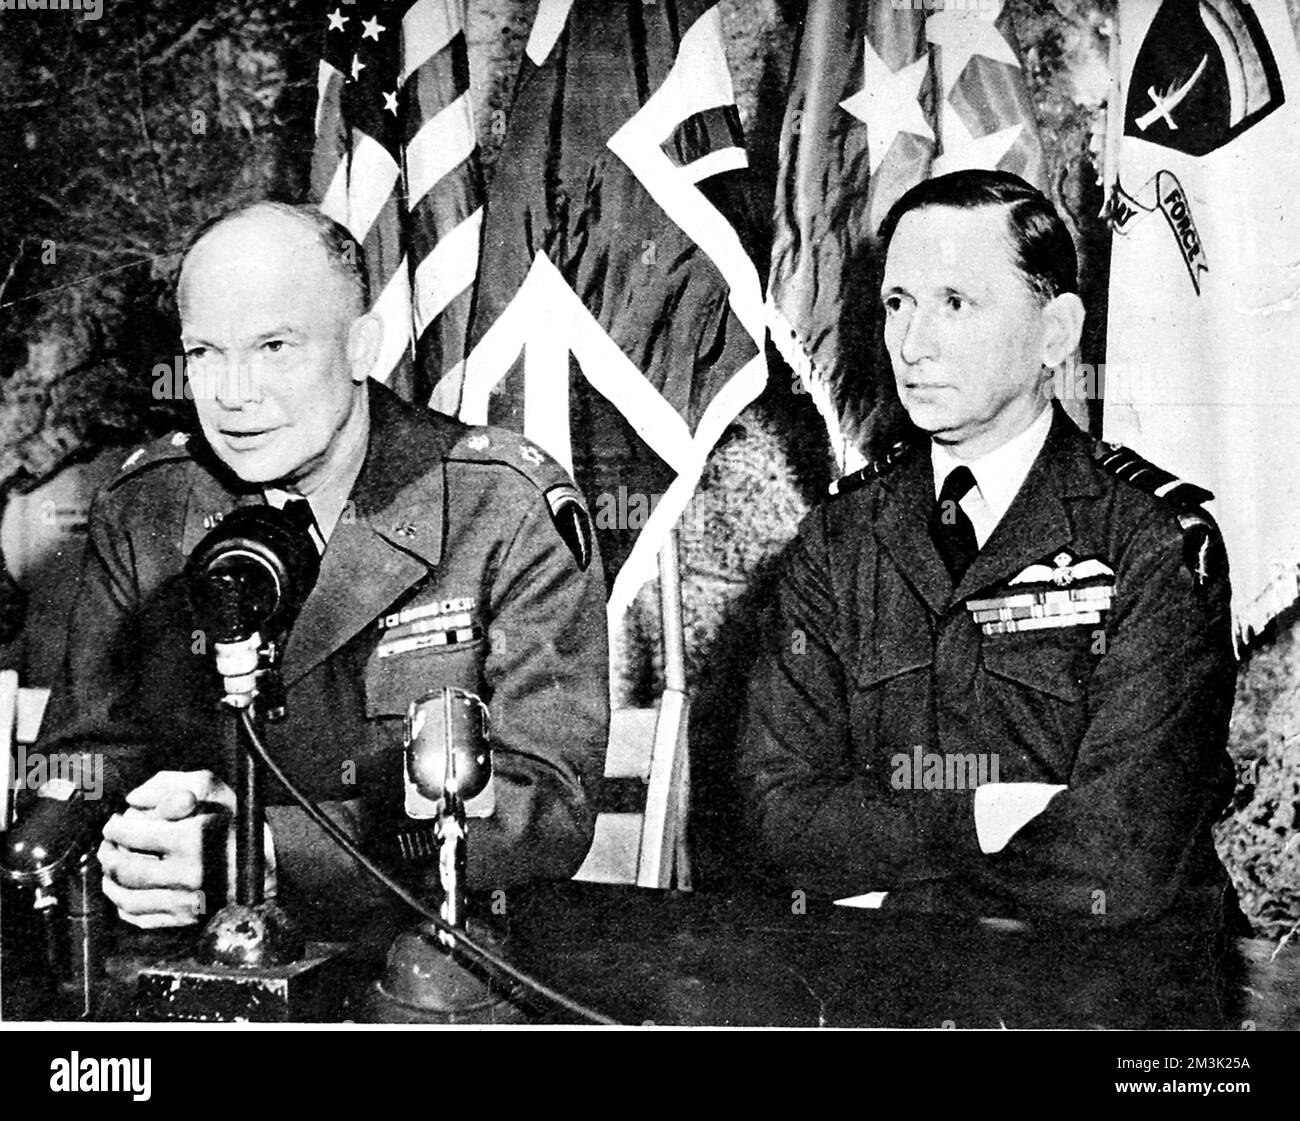 Photo montrant le général Dwight D. Eisenhower (à gauche), le Commandant en chef suprême des forces alliées, et le Chef-maréchal de l'air Sir Arthur Tedder, le Commandant suprême adjoint, photographiés à leur quartier général de Reims, en mai 1945. Date: 1945 Banque D'Images